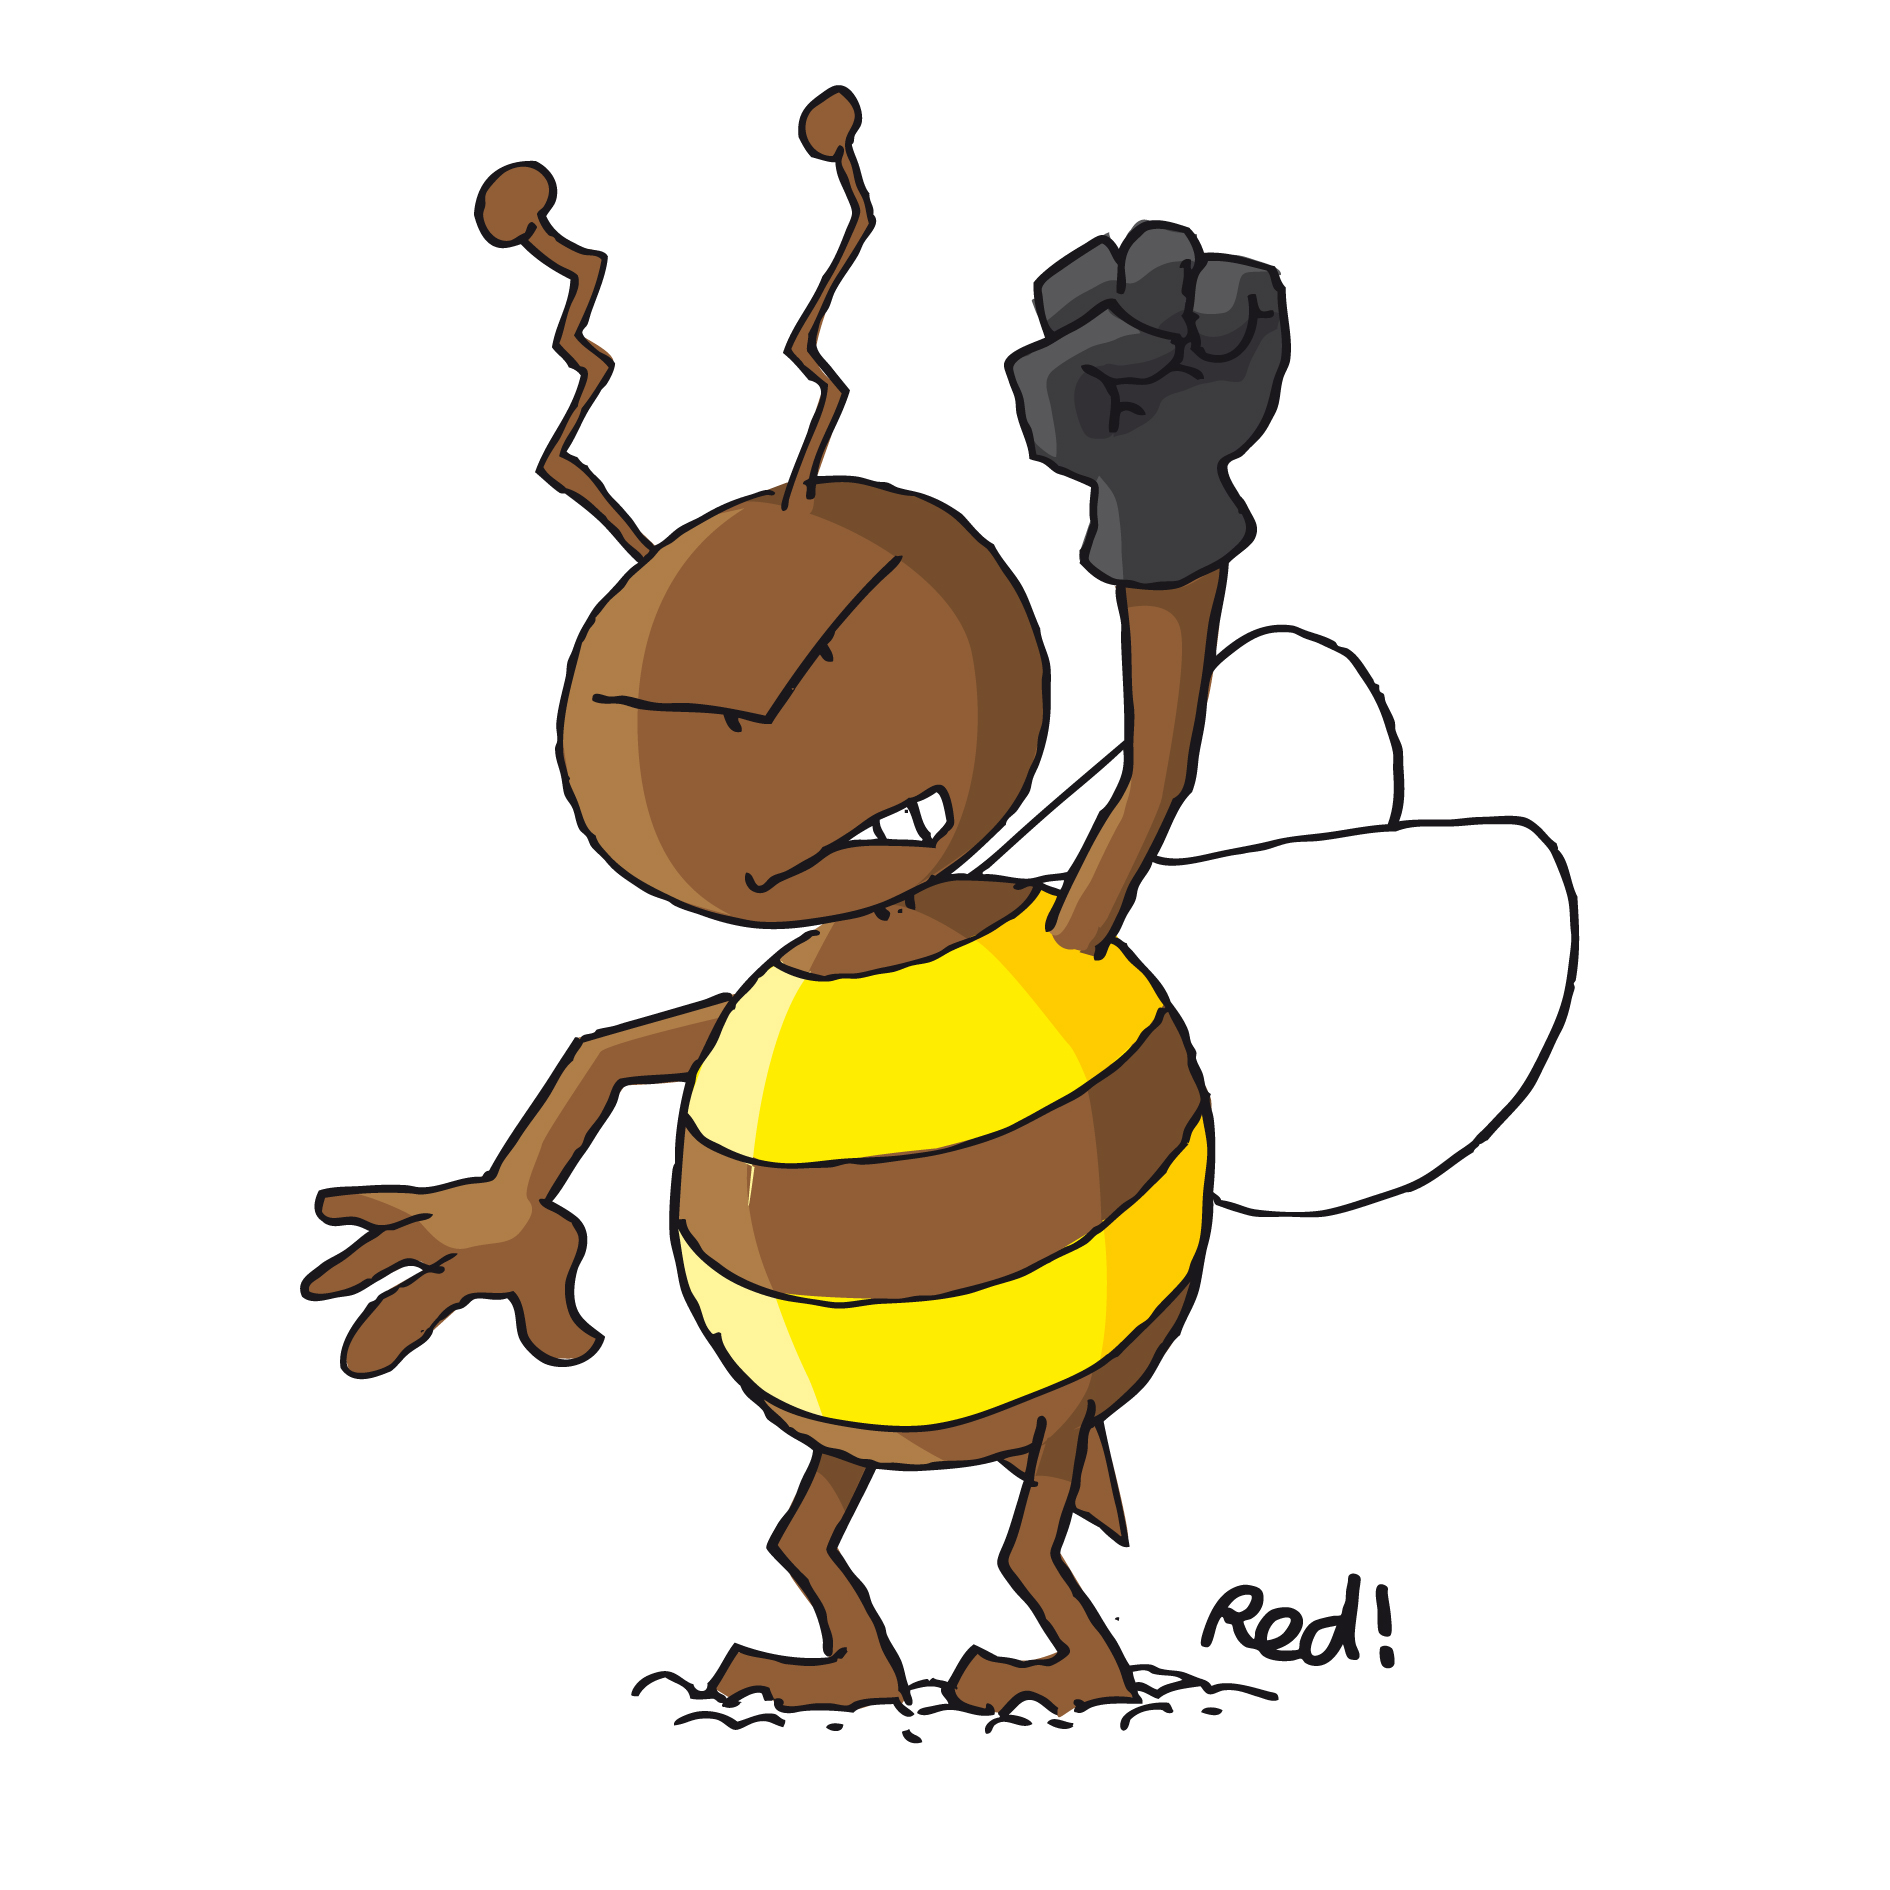 Interpellons nos député·e·s : non aux pesticides tueurs d'abeilles !